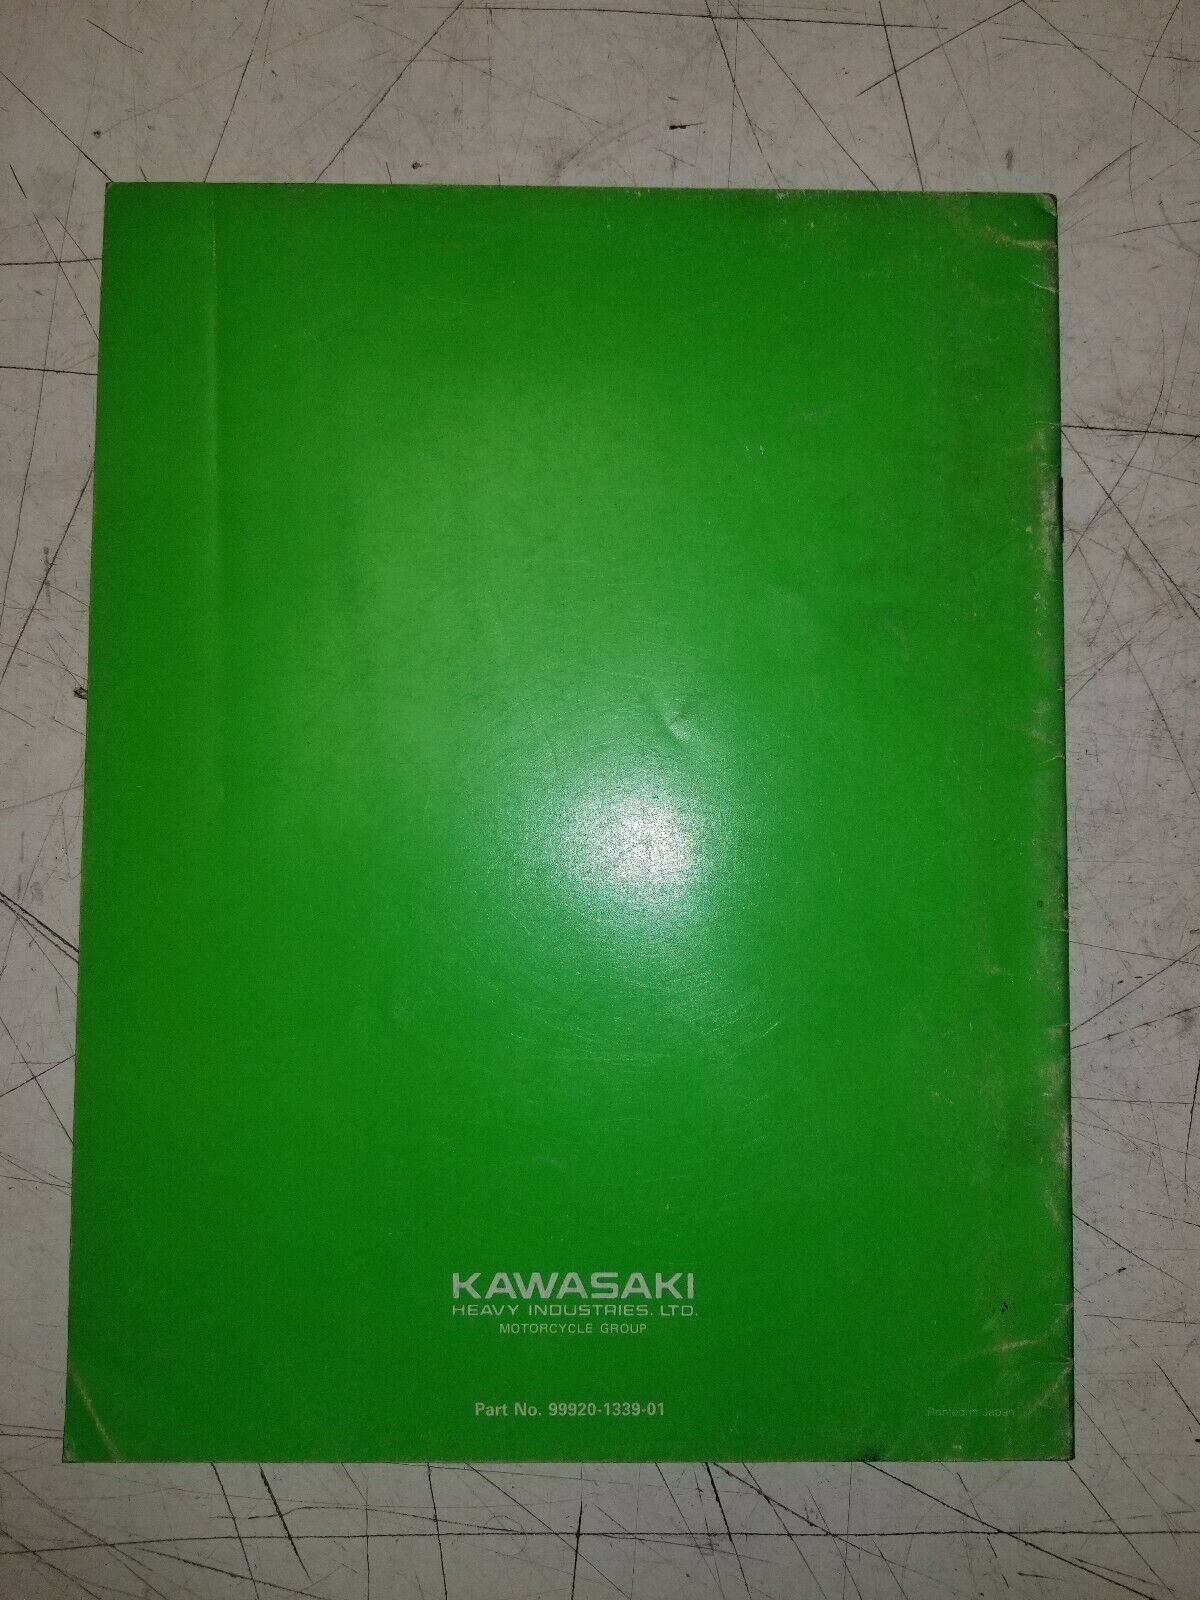 Kawasaki KX125/250/500 Factory Race Preparation and Tuning Manual  99920-1339-01